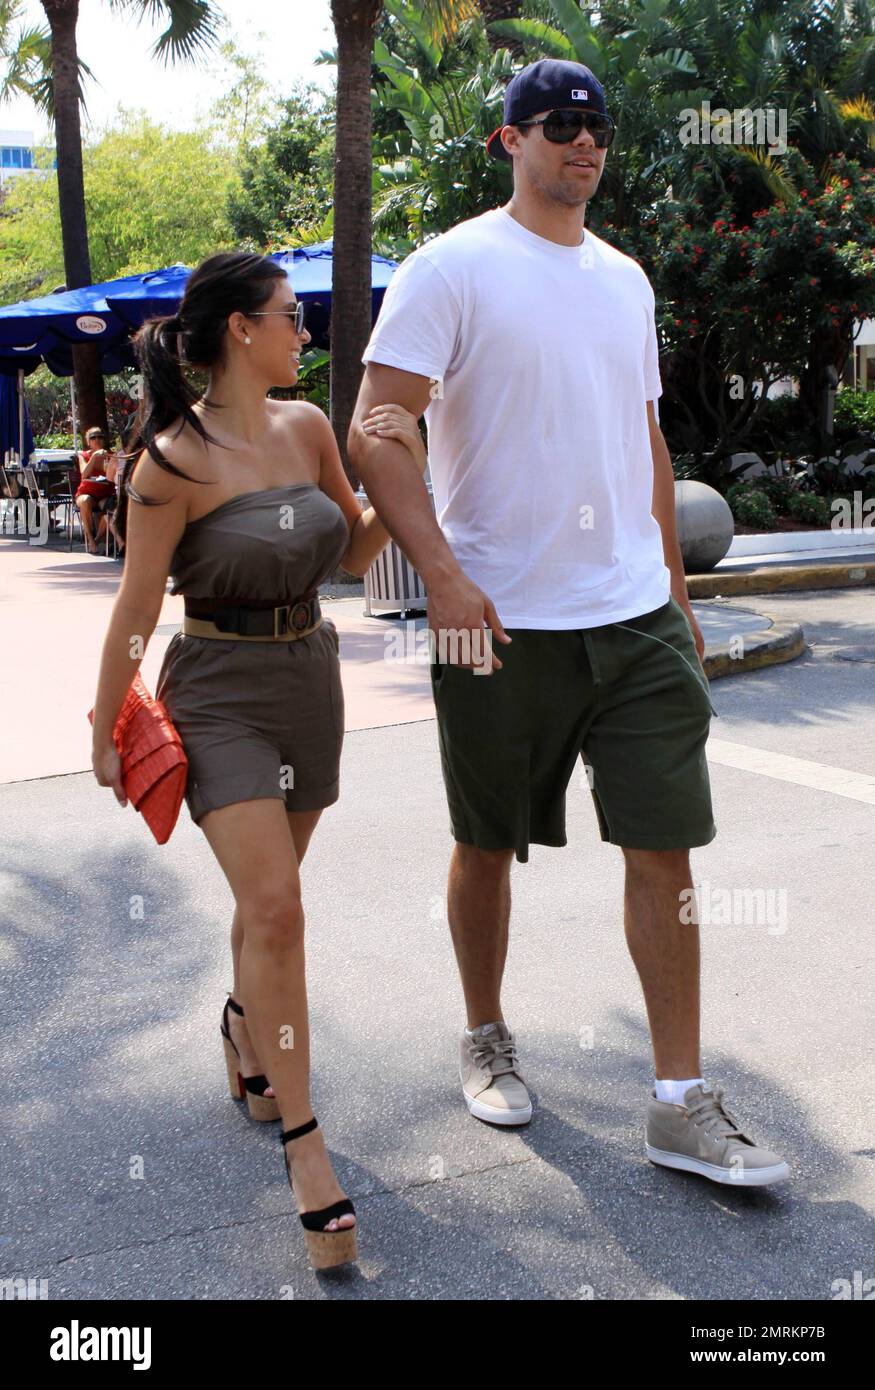 Kim Kardashian und ihr Freund Kris Humphries verbringen den Nachmittag in  South Beach auf der Suche nach einem neuen Standort für den Kardashian  Familienladen Dash, der sich derzeit in der Washington Avenue